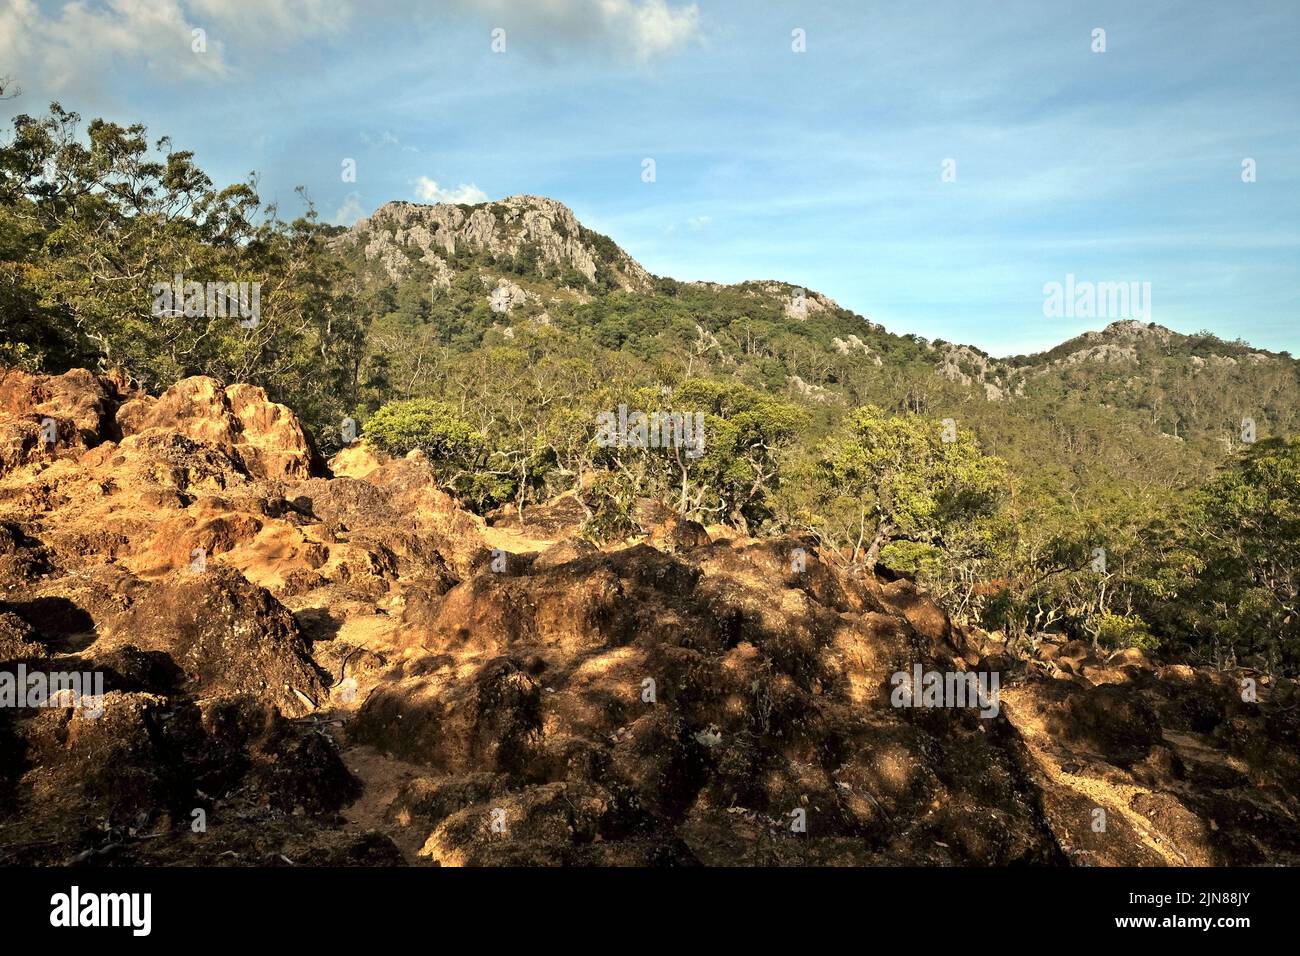 Paesaggio sotto una montagna rocciosa nei pressi del villaggio di Fatumnasi nel sud-centro di Timor, Nusa Tenggara, Indonesia. Foto Stock